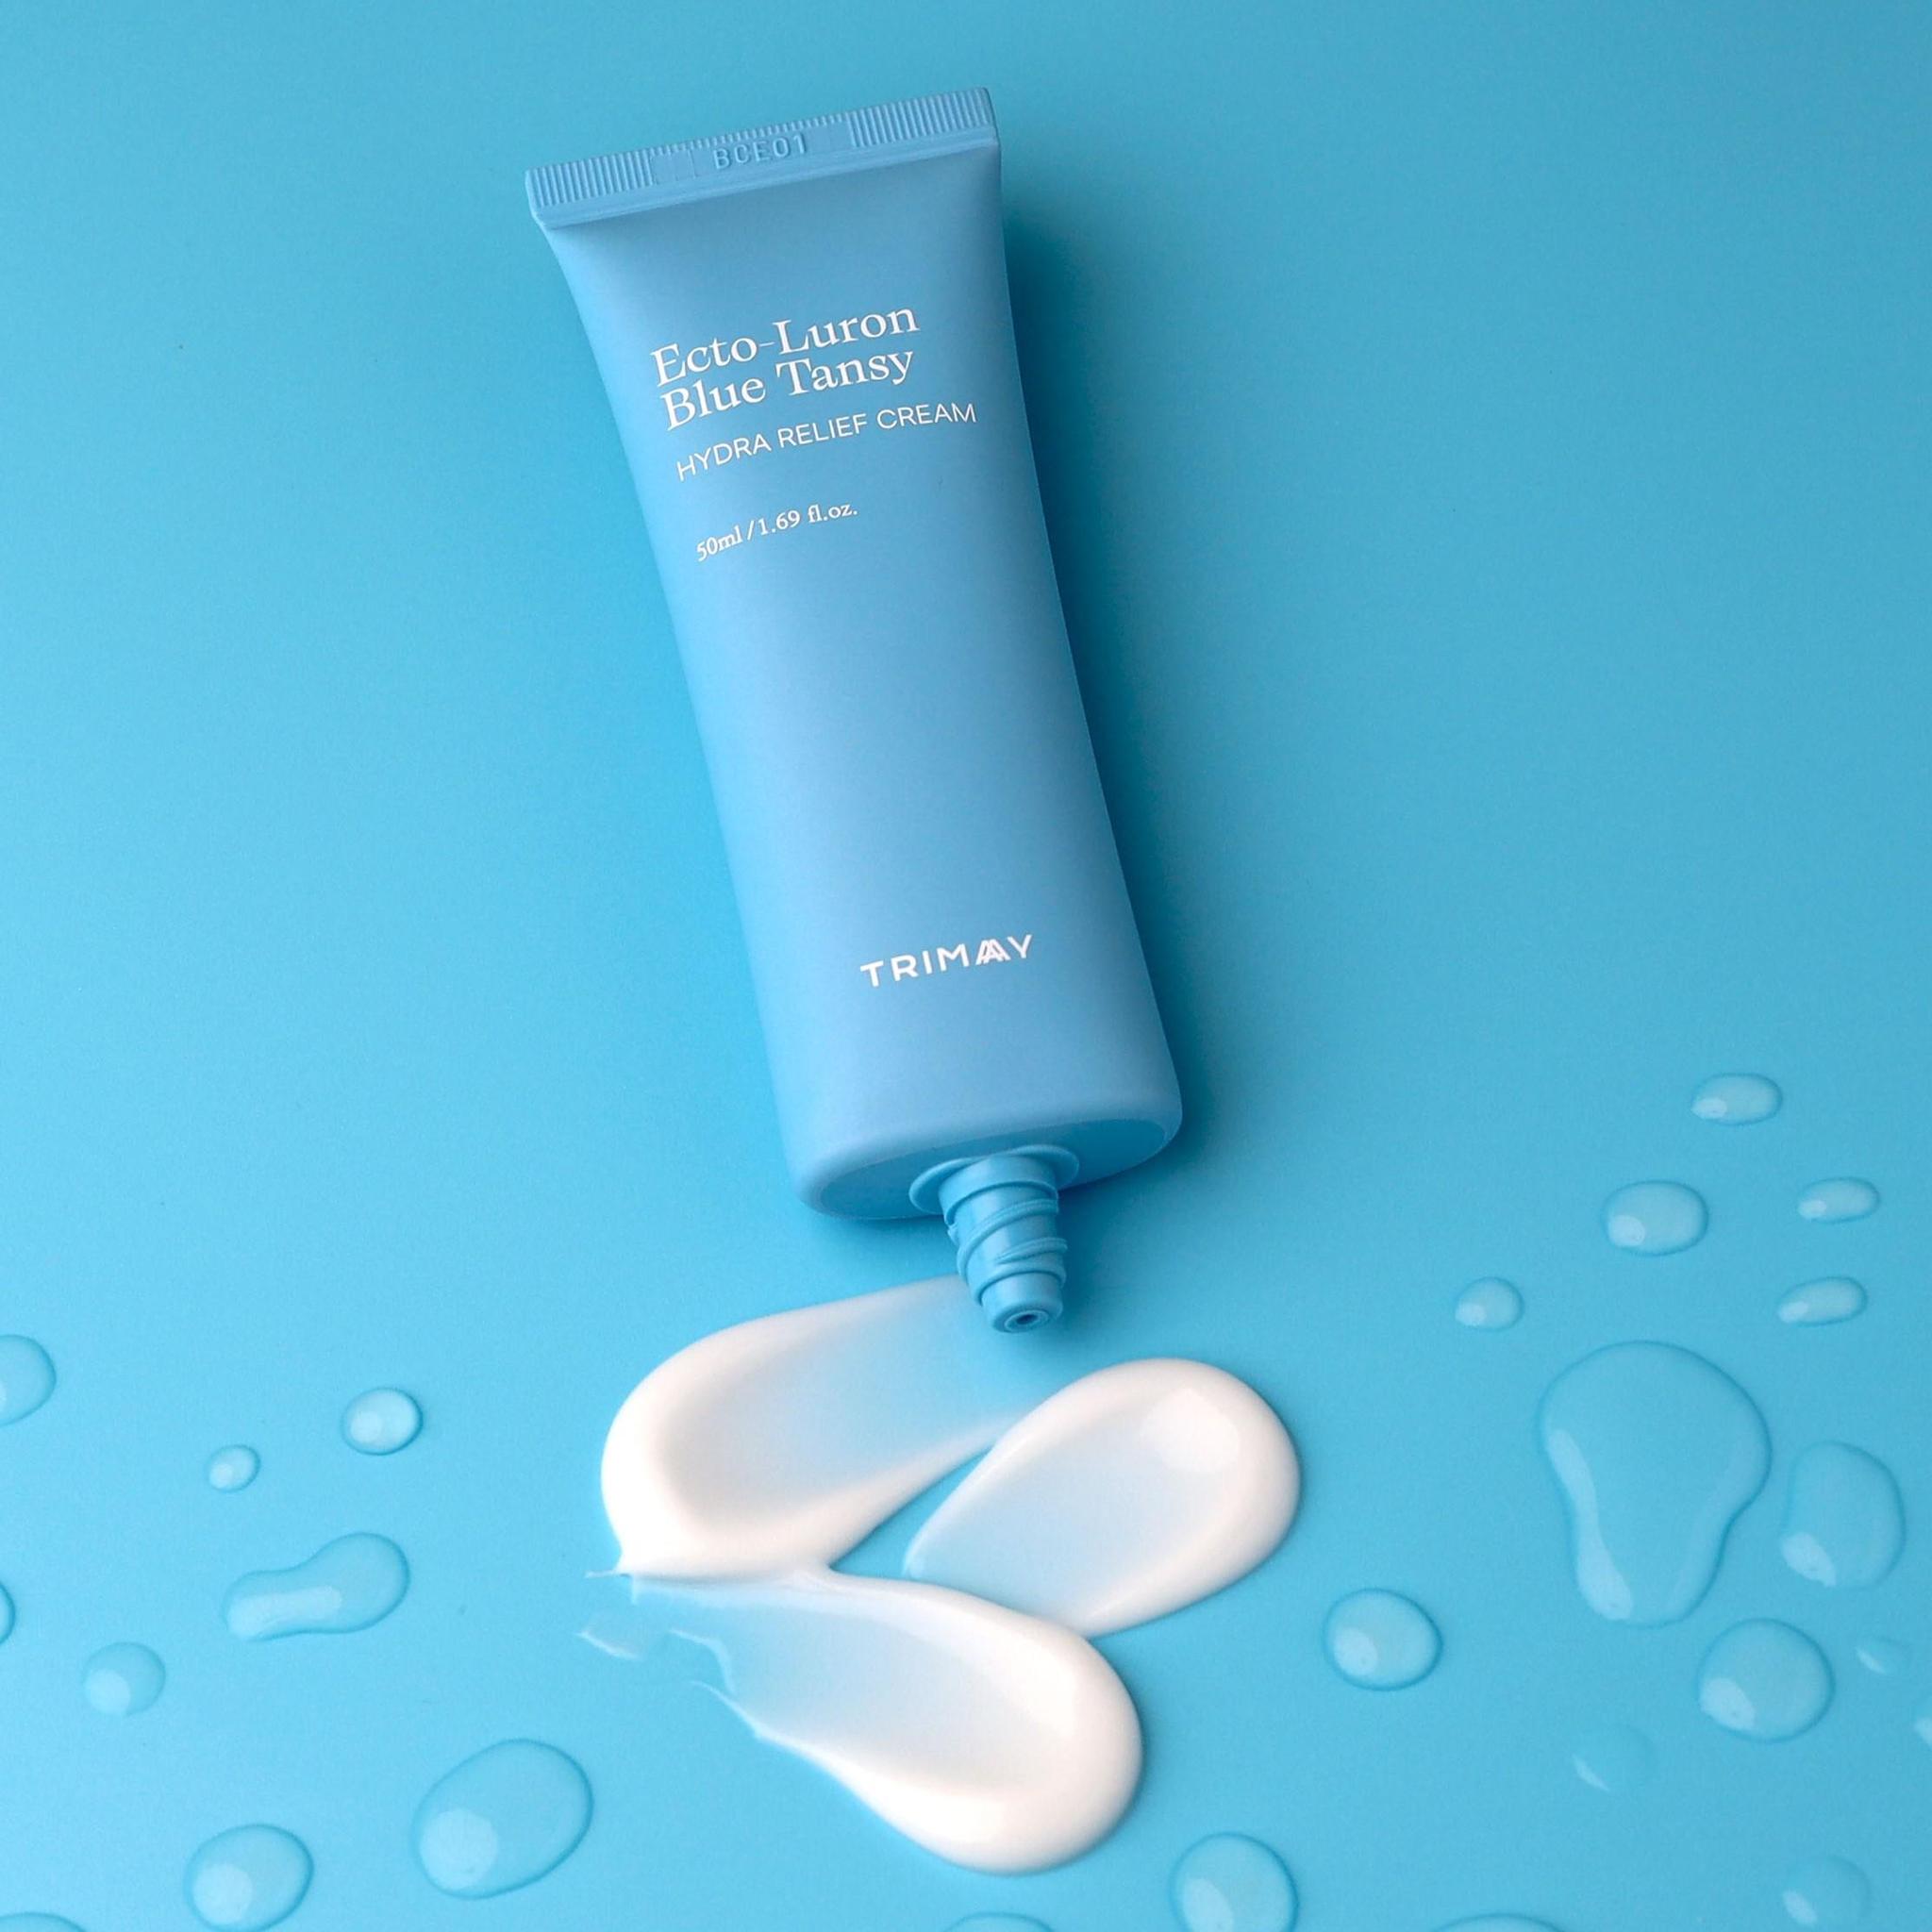 Увлажняющий крем для лица с эктоином и гиалуроновой кислотой TRIMAY Ecto-Luron Blue Tansy Hydra Relief Cream